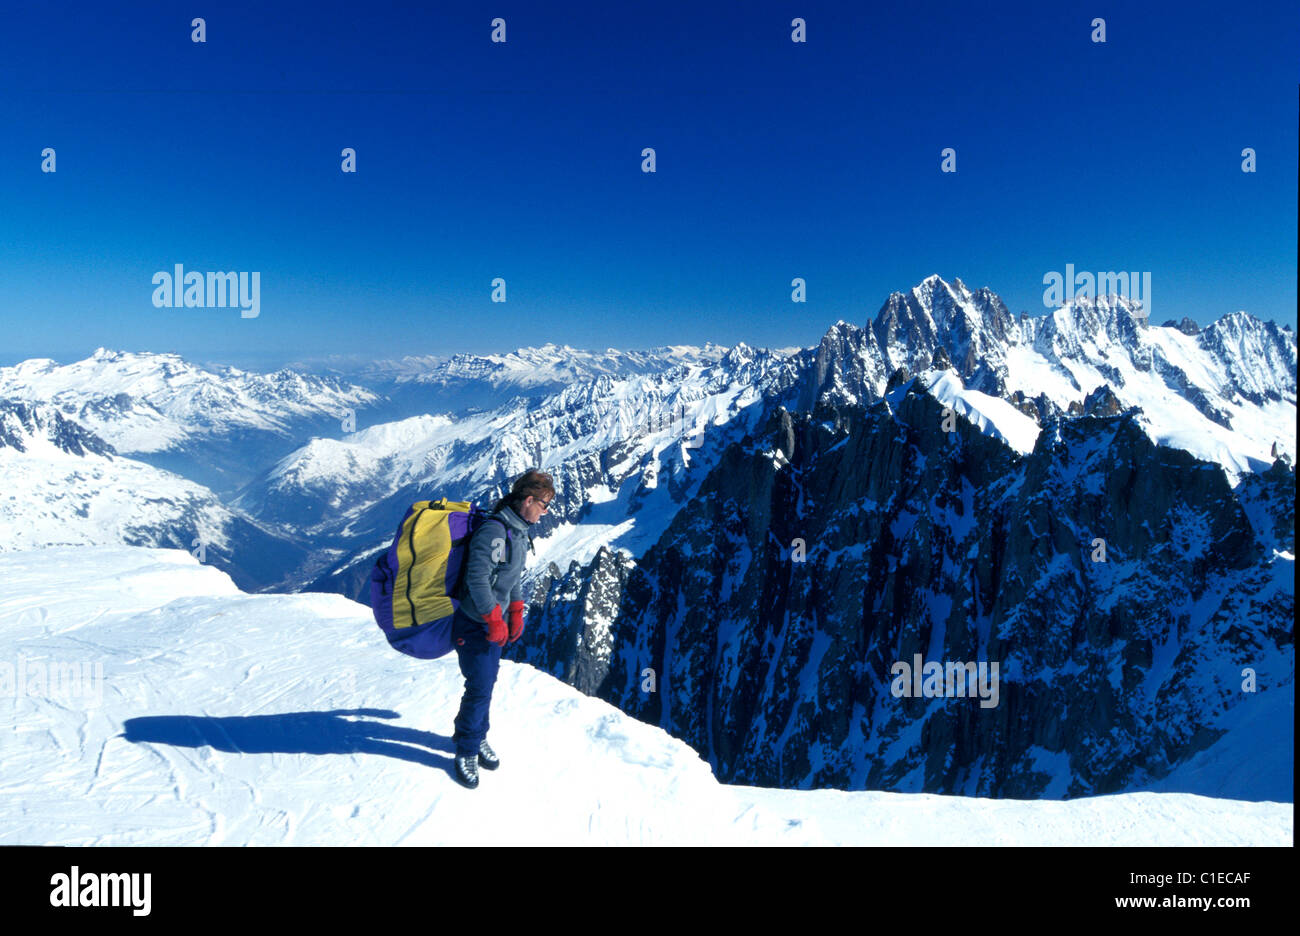 Frankreich Haute Savoie Chamonix Winter Ski auf das Vallée Blanche Gletscher erreichbar mit der Seilbahn Aiguille du Midi auf 3870m Stockfoto